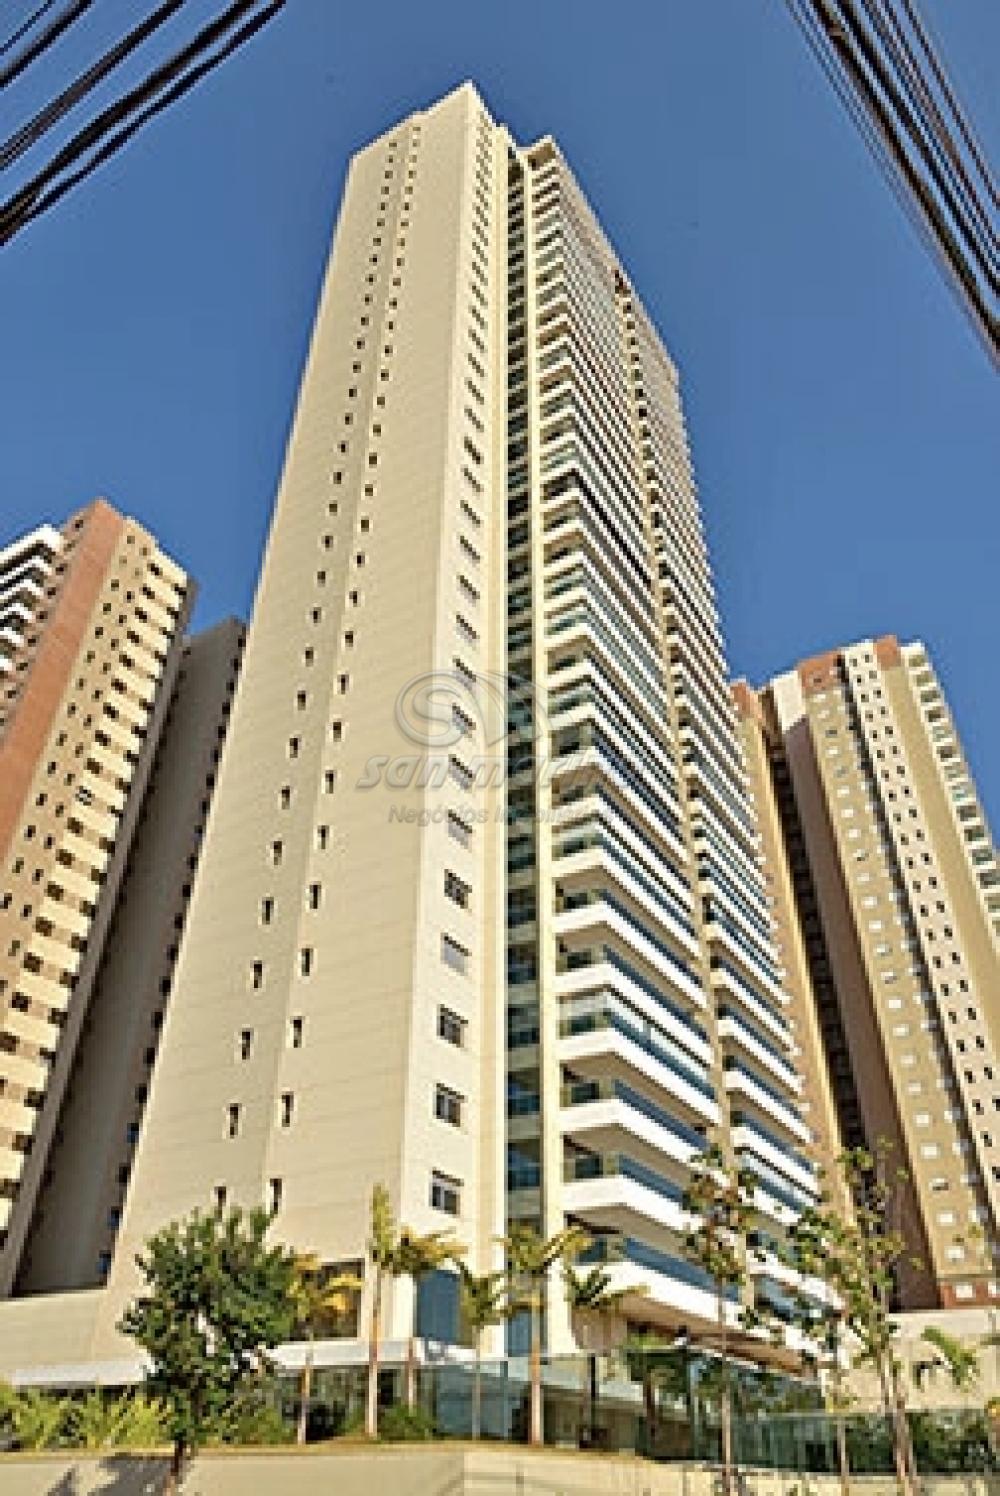 Apartamentos / Padrão em Ribeirão Preto - foto 32